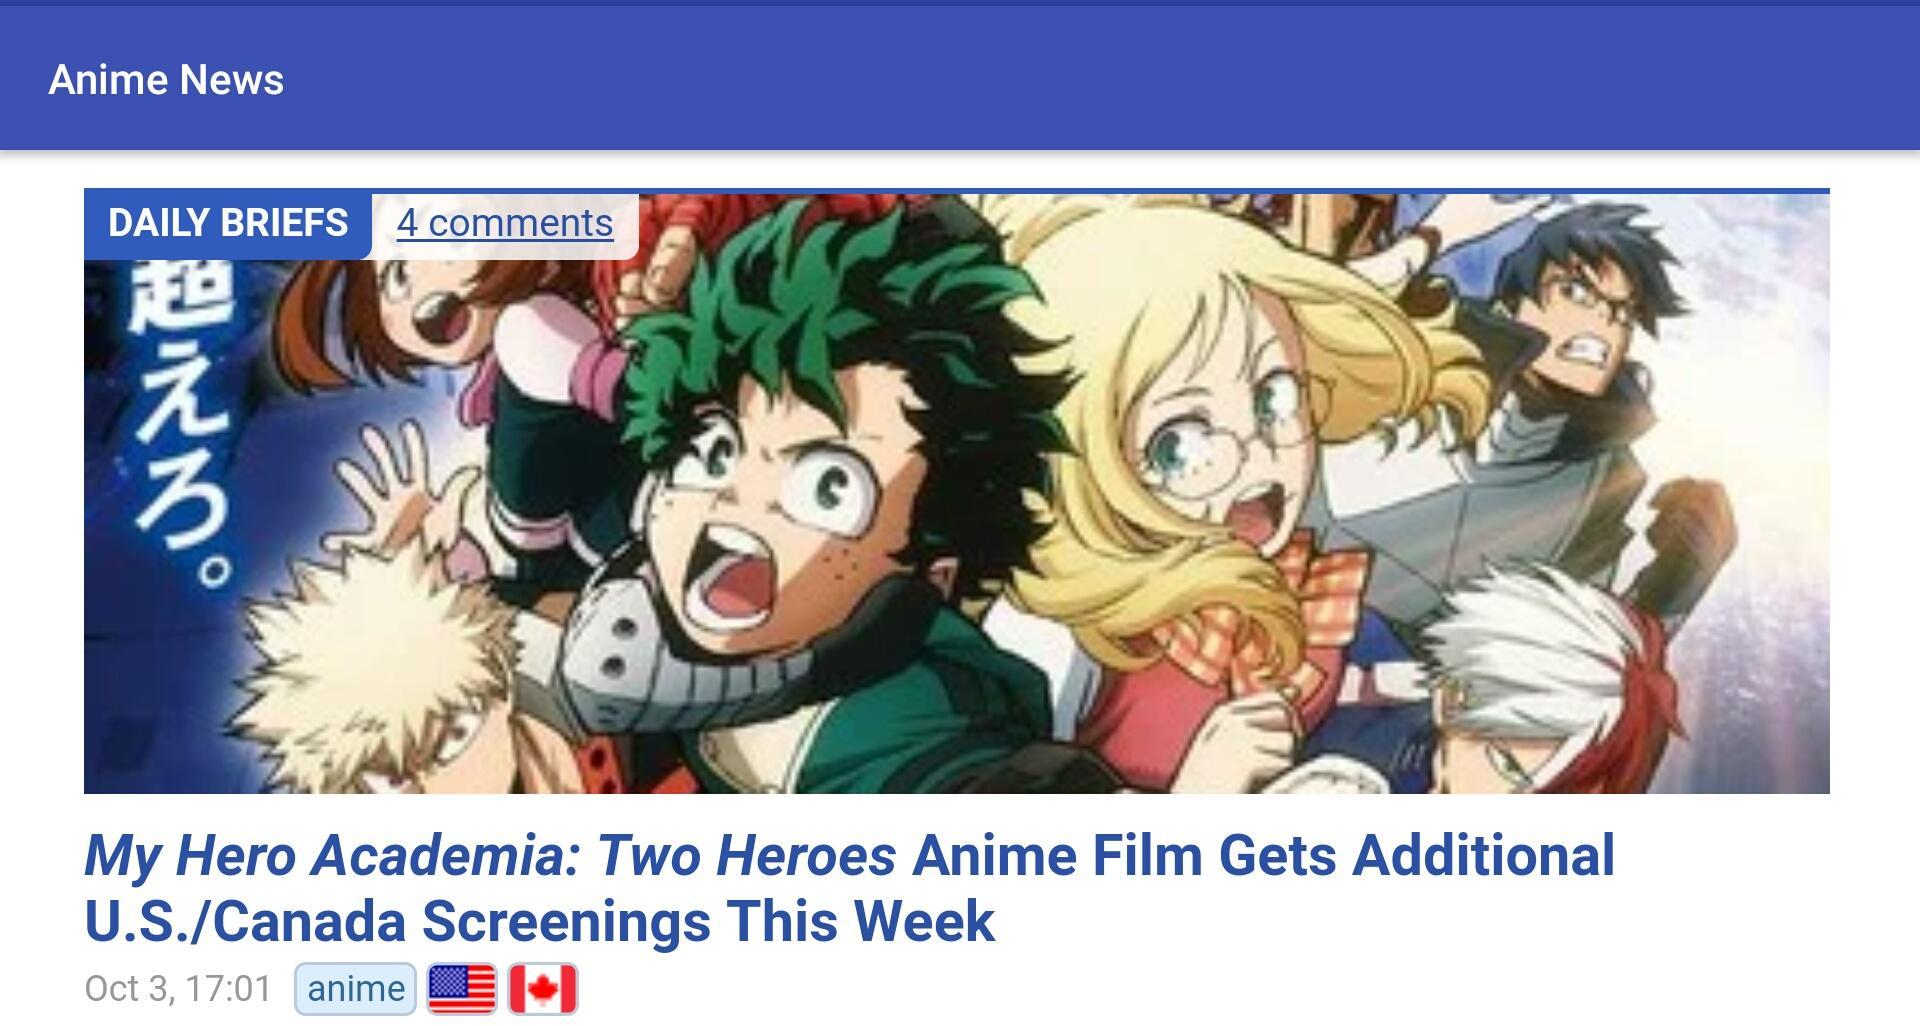 Anime news